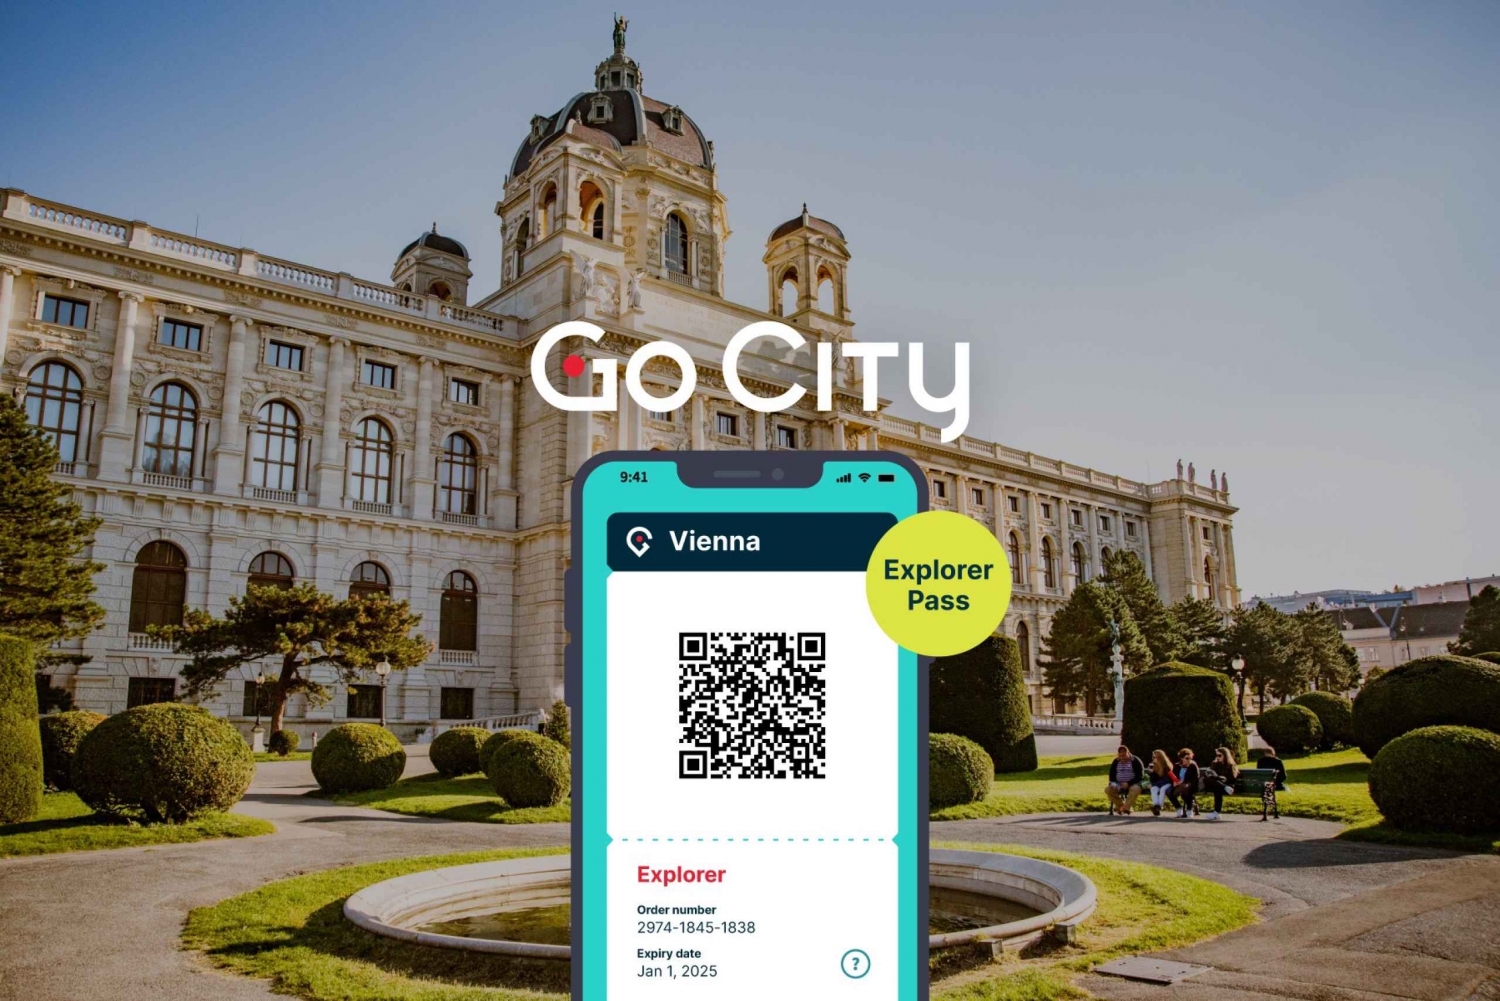 Wenen: Go City Explorer Pass voor maximaal 7 attracties